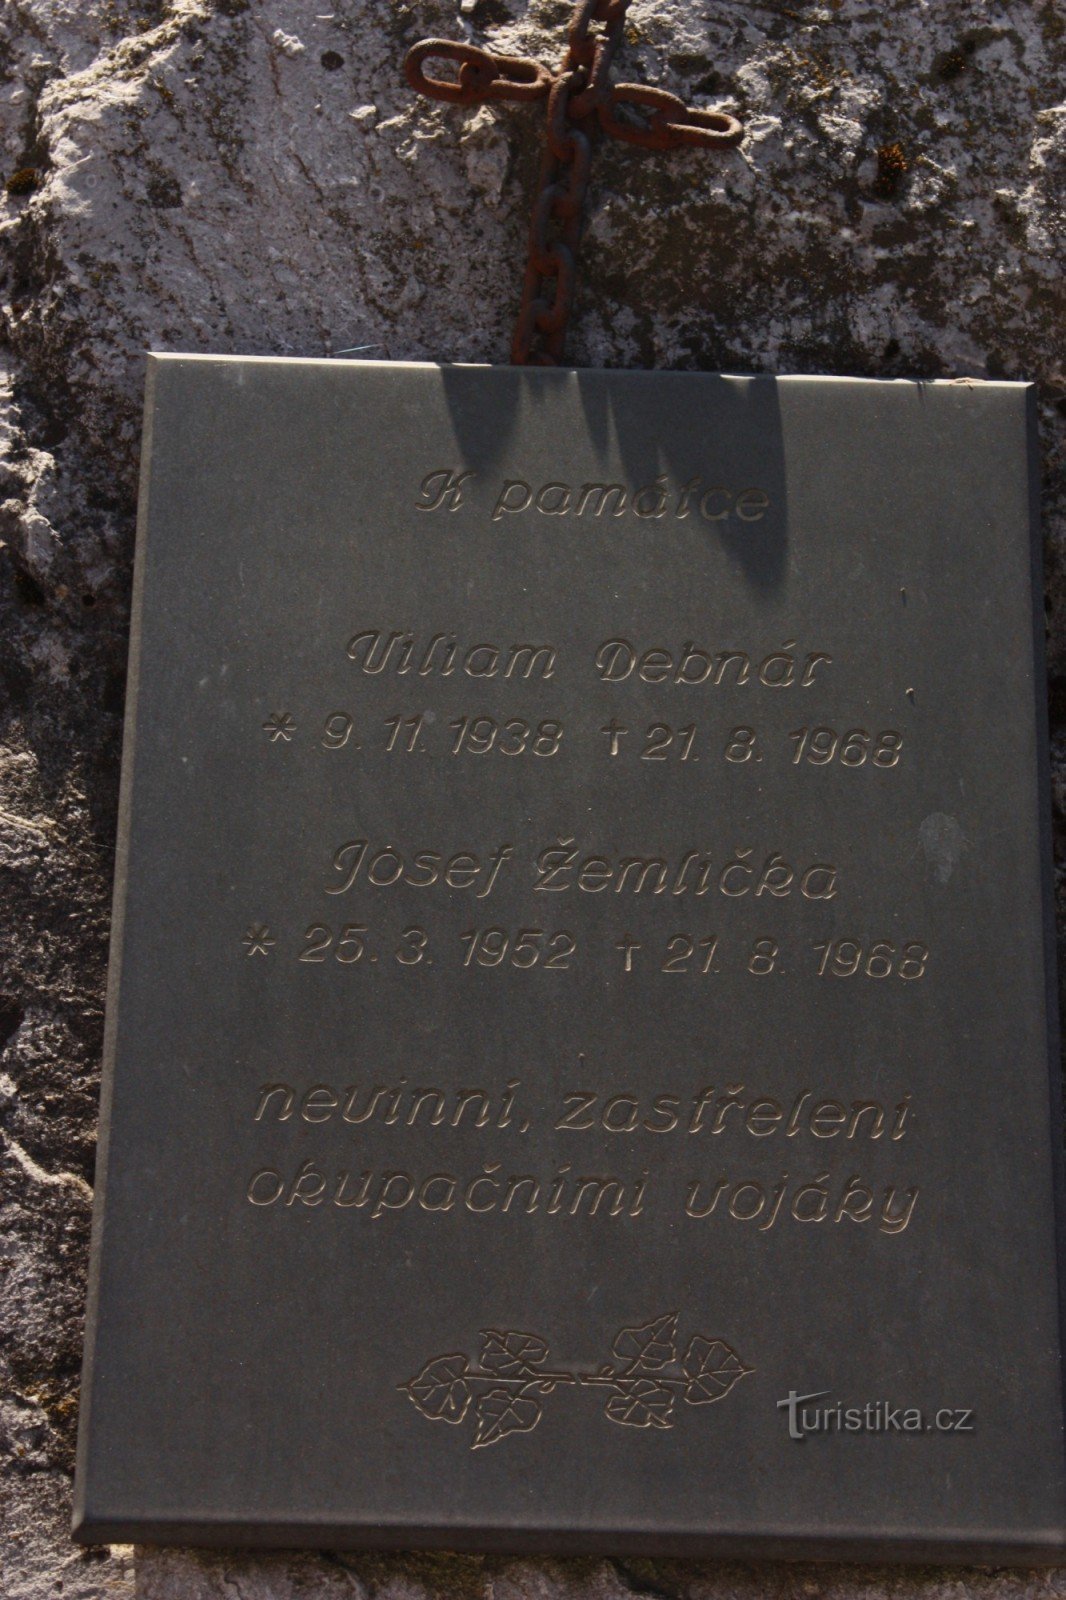 ブルノの 21 年 8 月 1968 日の犠牲者の記念碑 - リシュニ